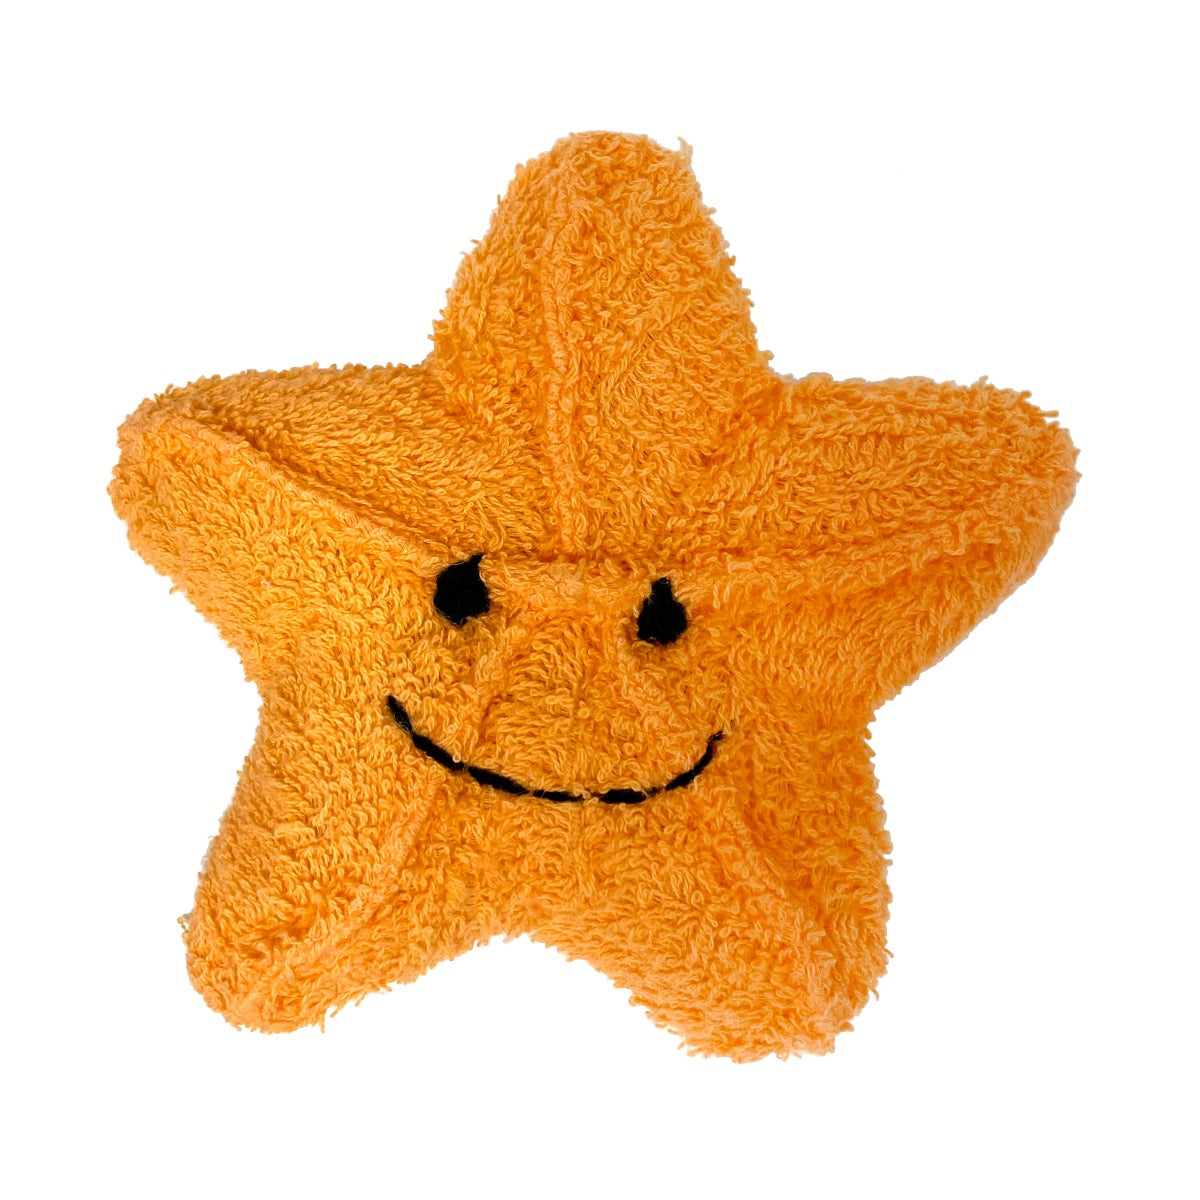 Star Fish Ramie